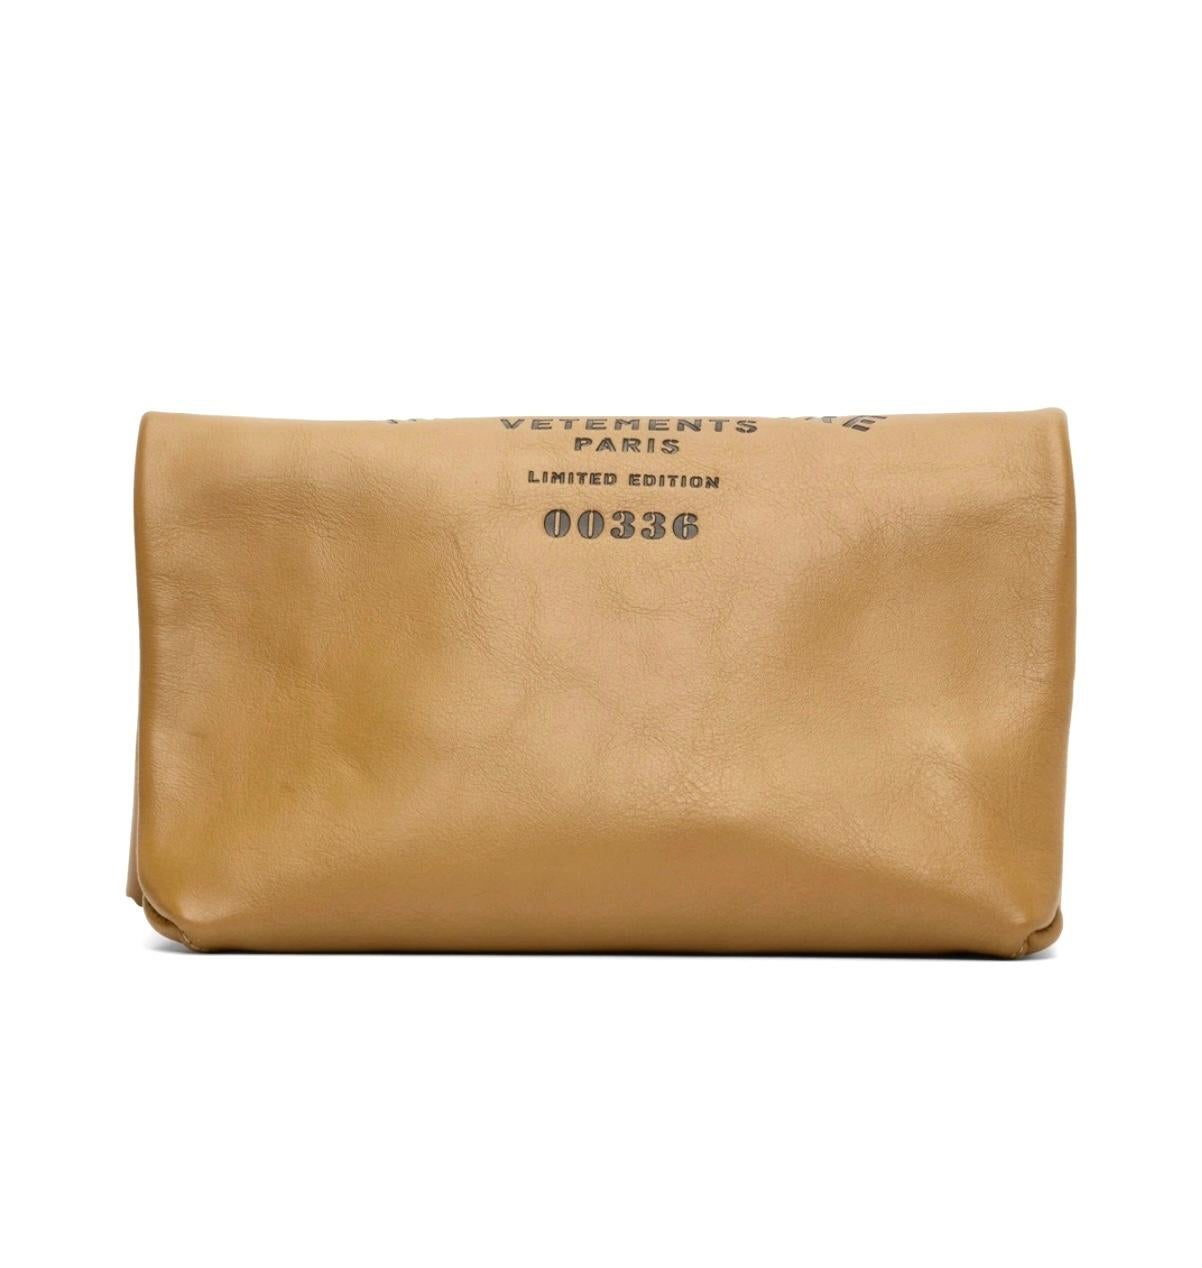 Vetement Couture limitierte Auflage der Paperbag-Clutch-Messenger-Tasche aus Kalbsleder, Herbst-Winter 2019. Nummerierte, limitierte Auflage.